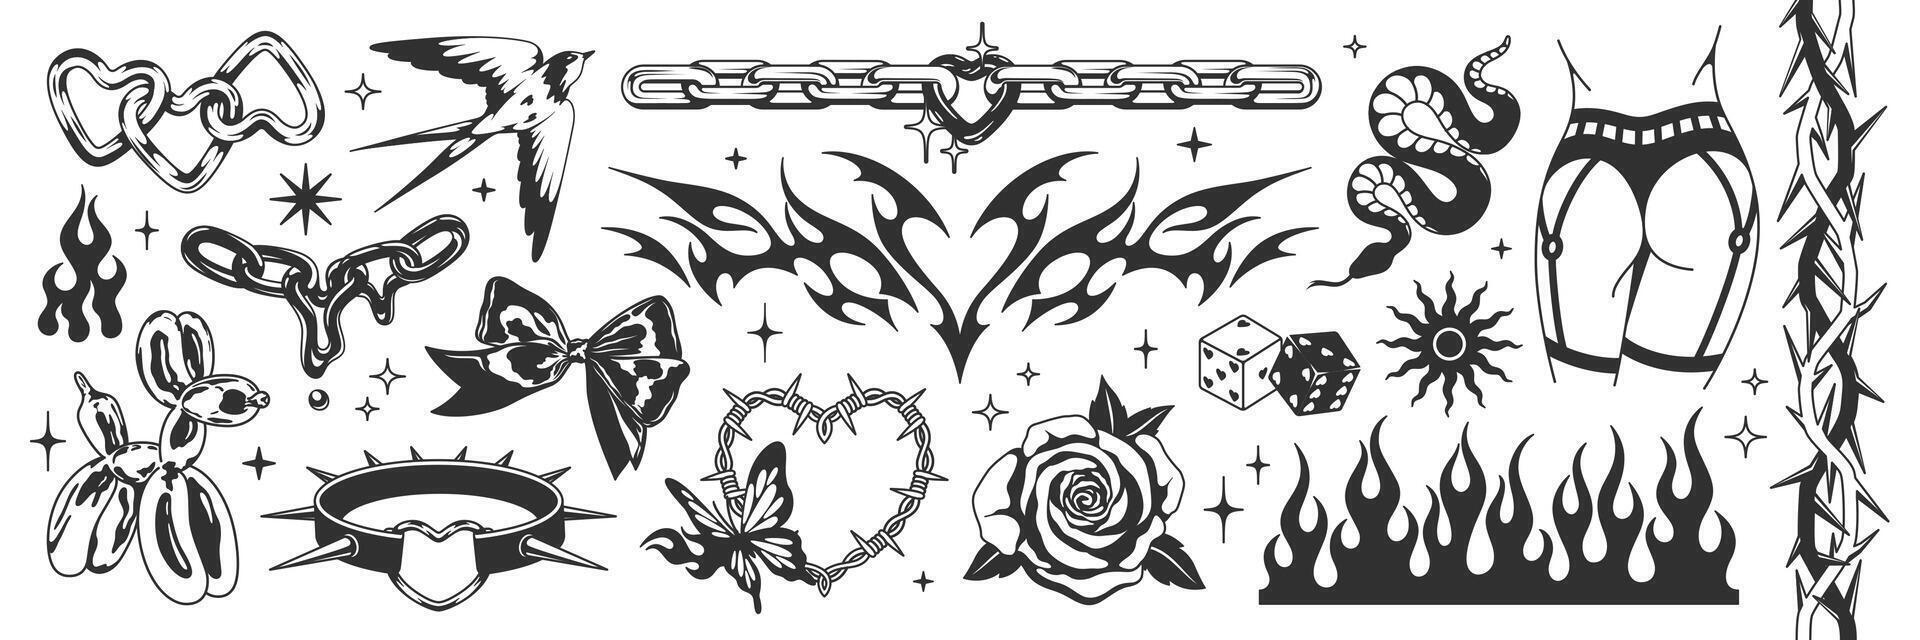 tatuagem arte sinais do Anos 2000 estilo. ano 2000 estético definir. vintage símbolos, fluido gótico corrente, coração, rosa, chama, arco, pássaro, balão cachorro, borboleta, dados, abrunheiro, serpente. vetor tatuagem linha adesivos